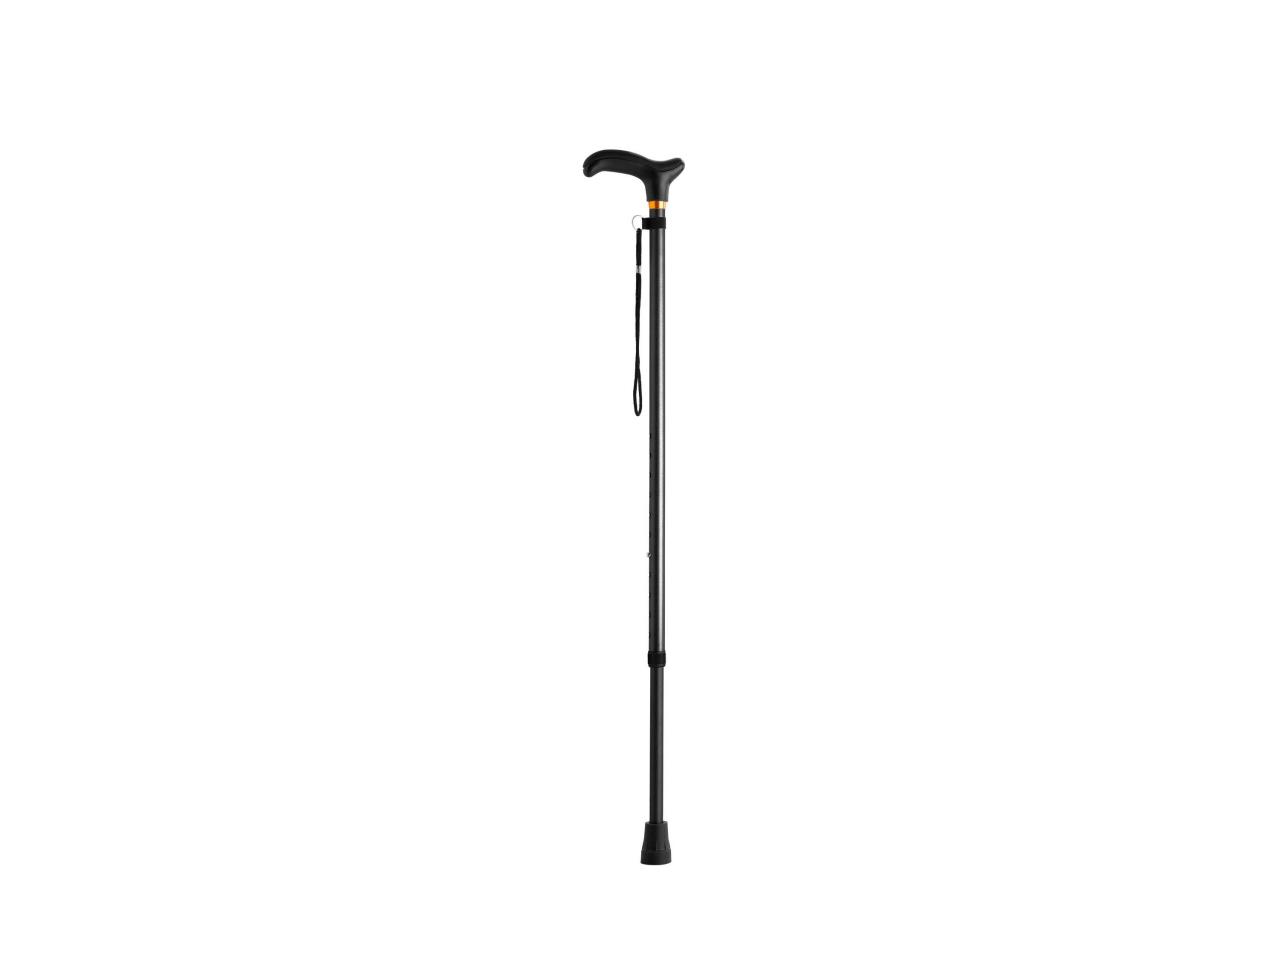 Object Pick-Up Stick / Telescopic Walking Stick